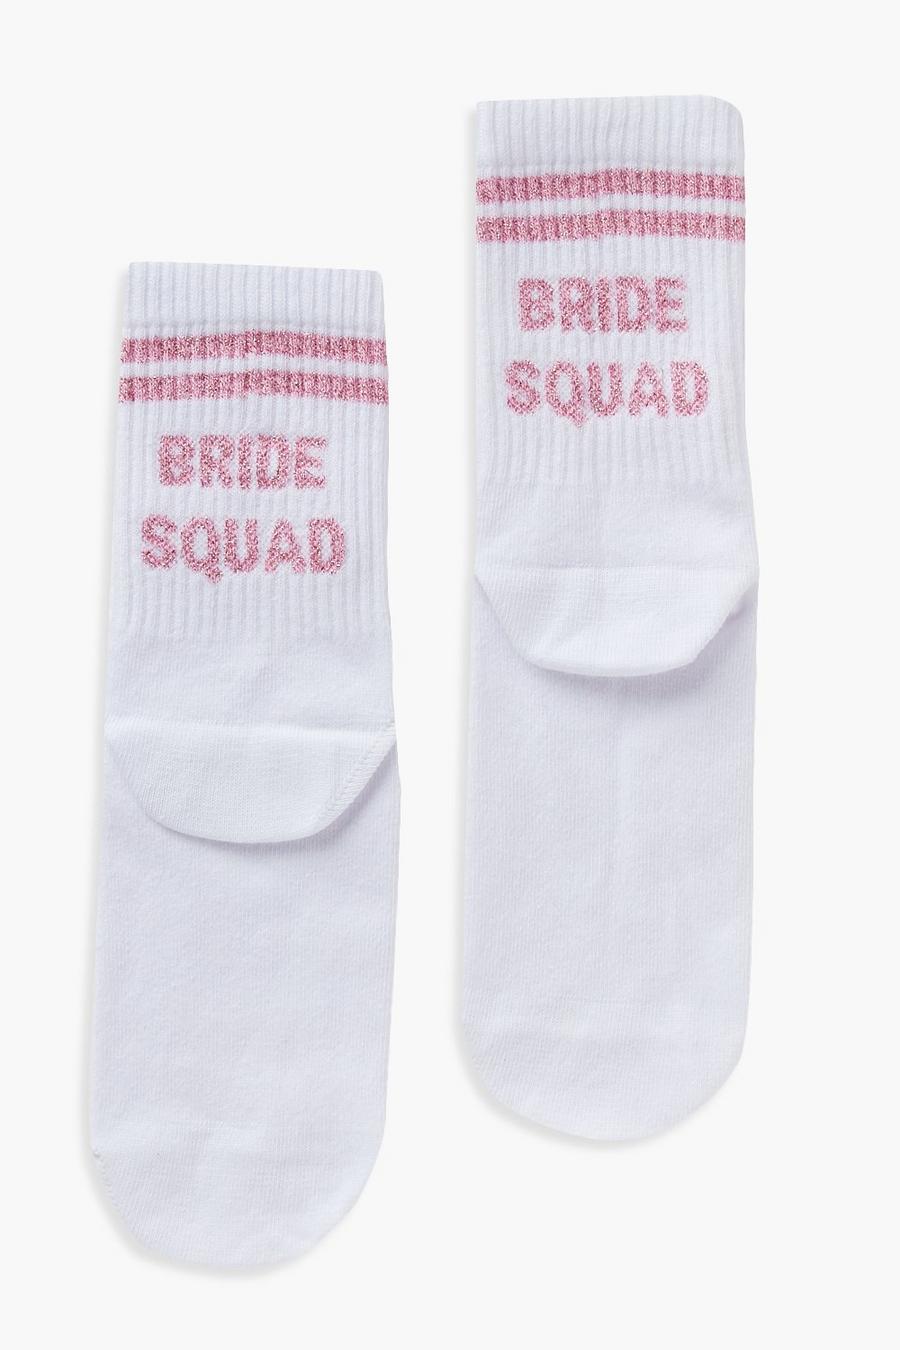 Socken mit Bride Squad Slogan, Weiß white